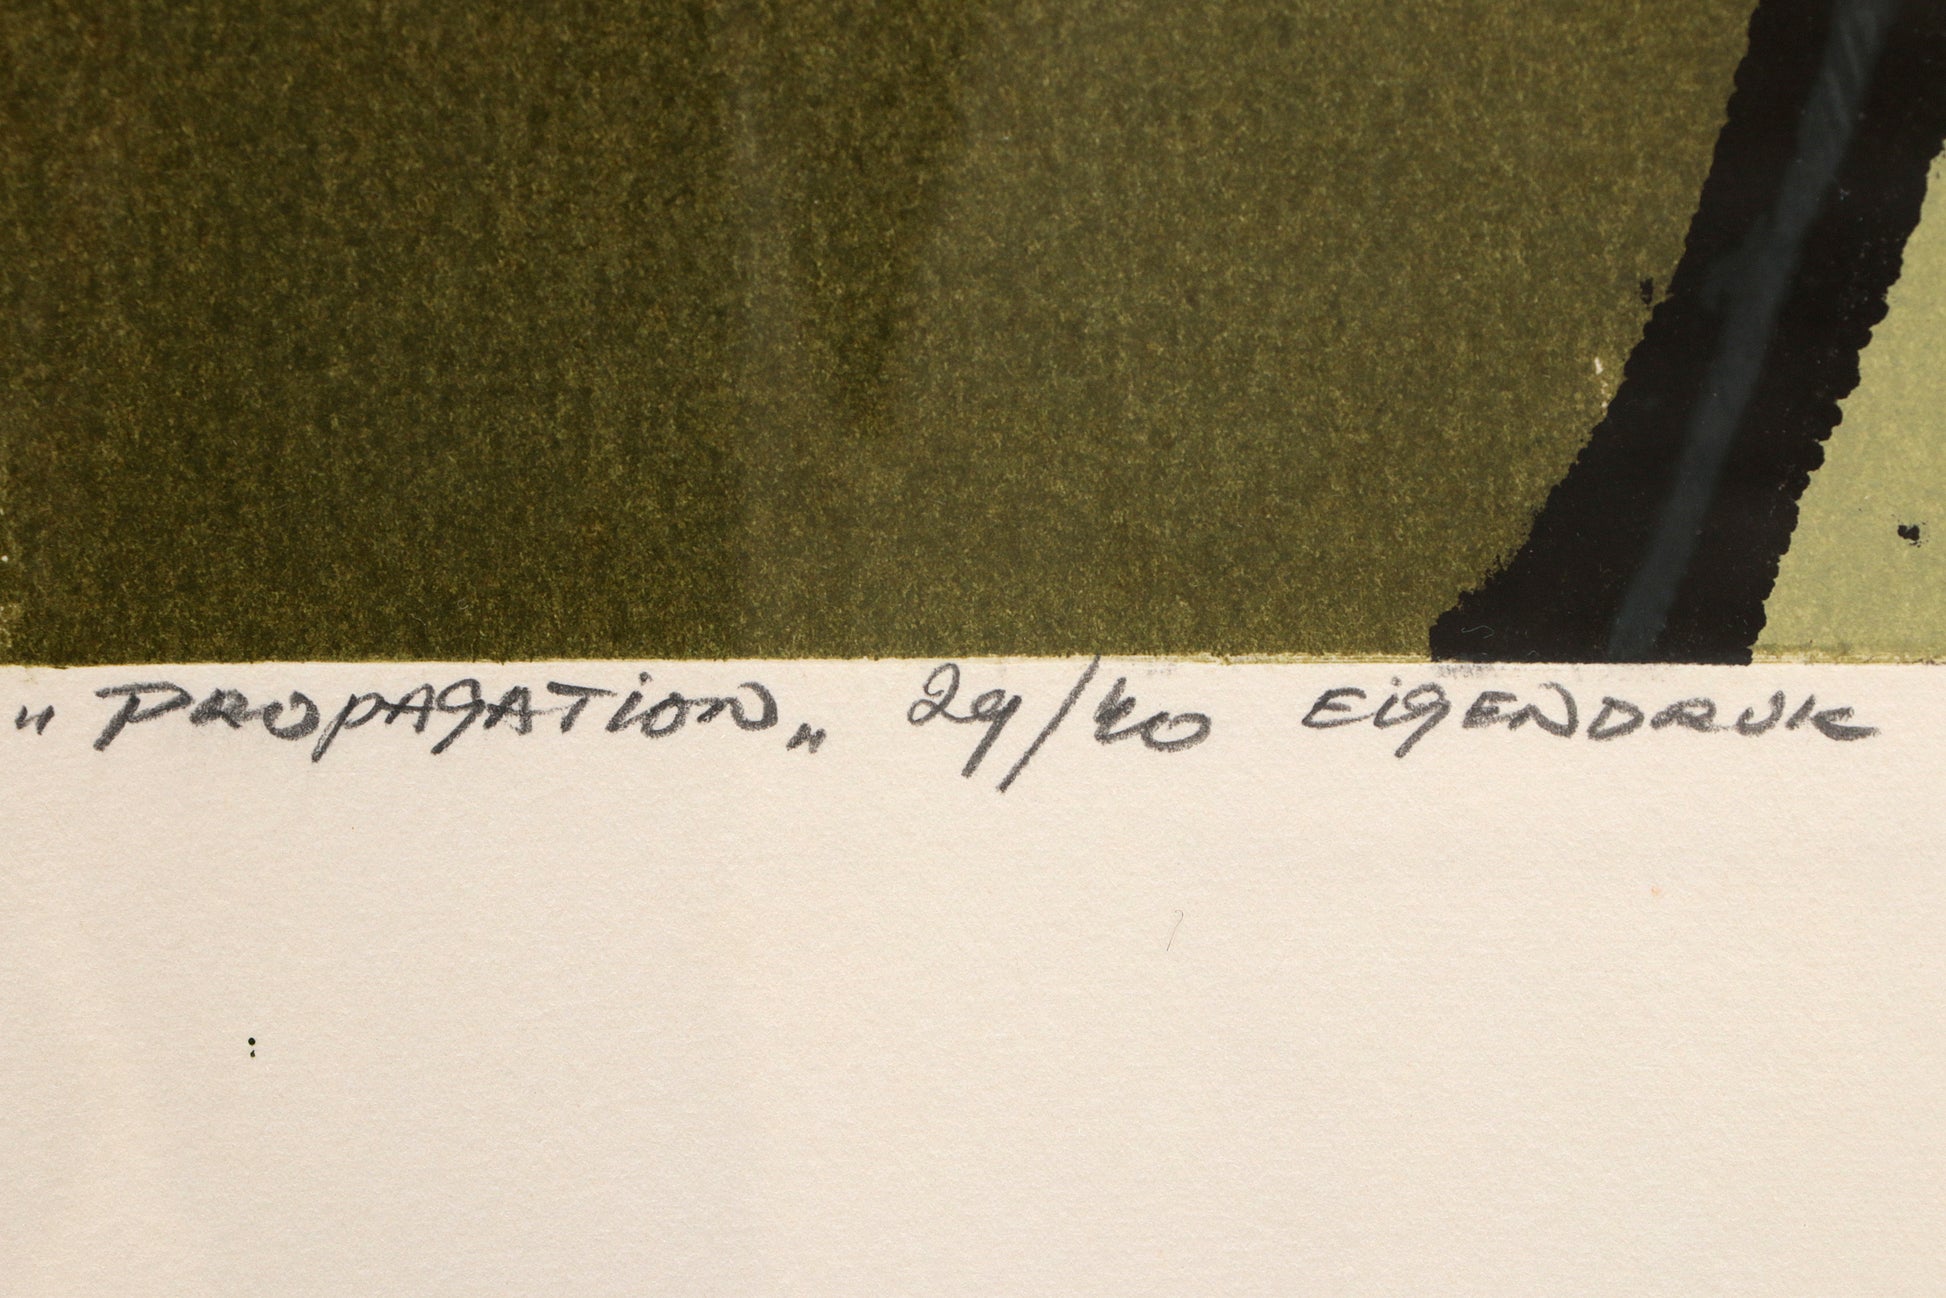 Fon Klement (1930-2000)  'Propagation', gesigneerd met 29/40 eigendruk,1971